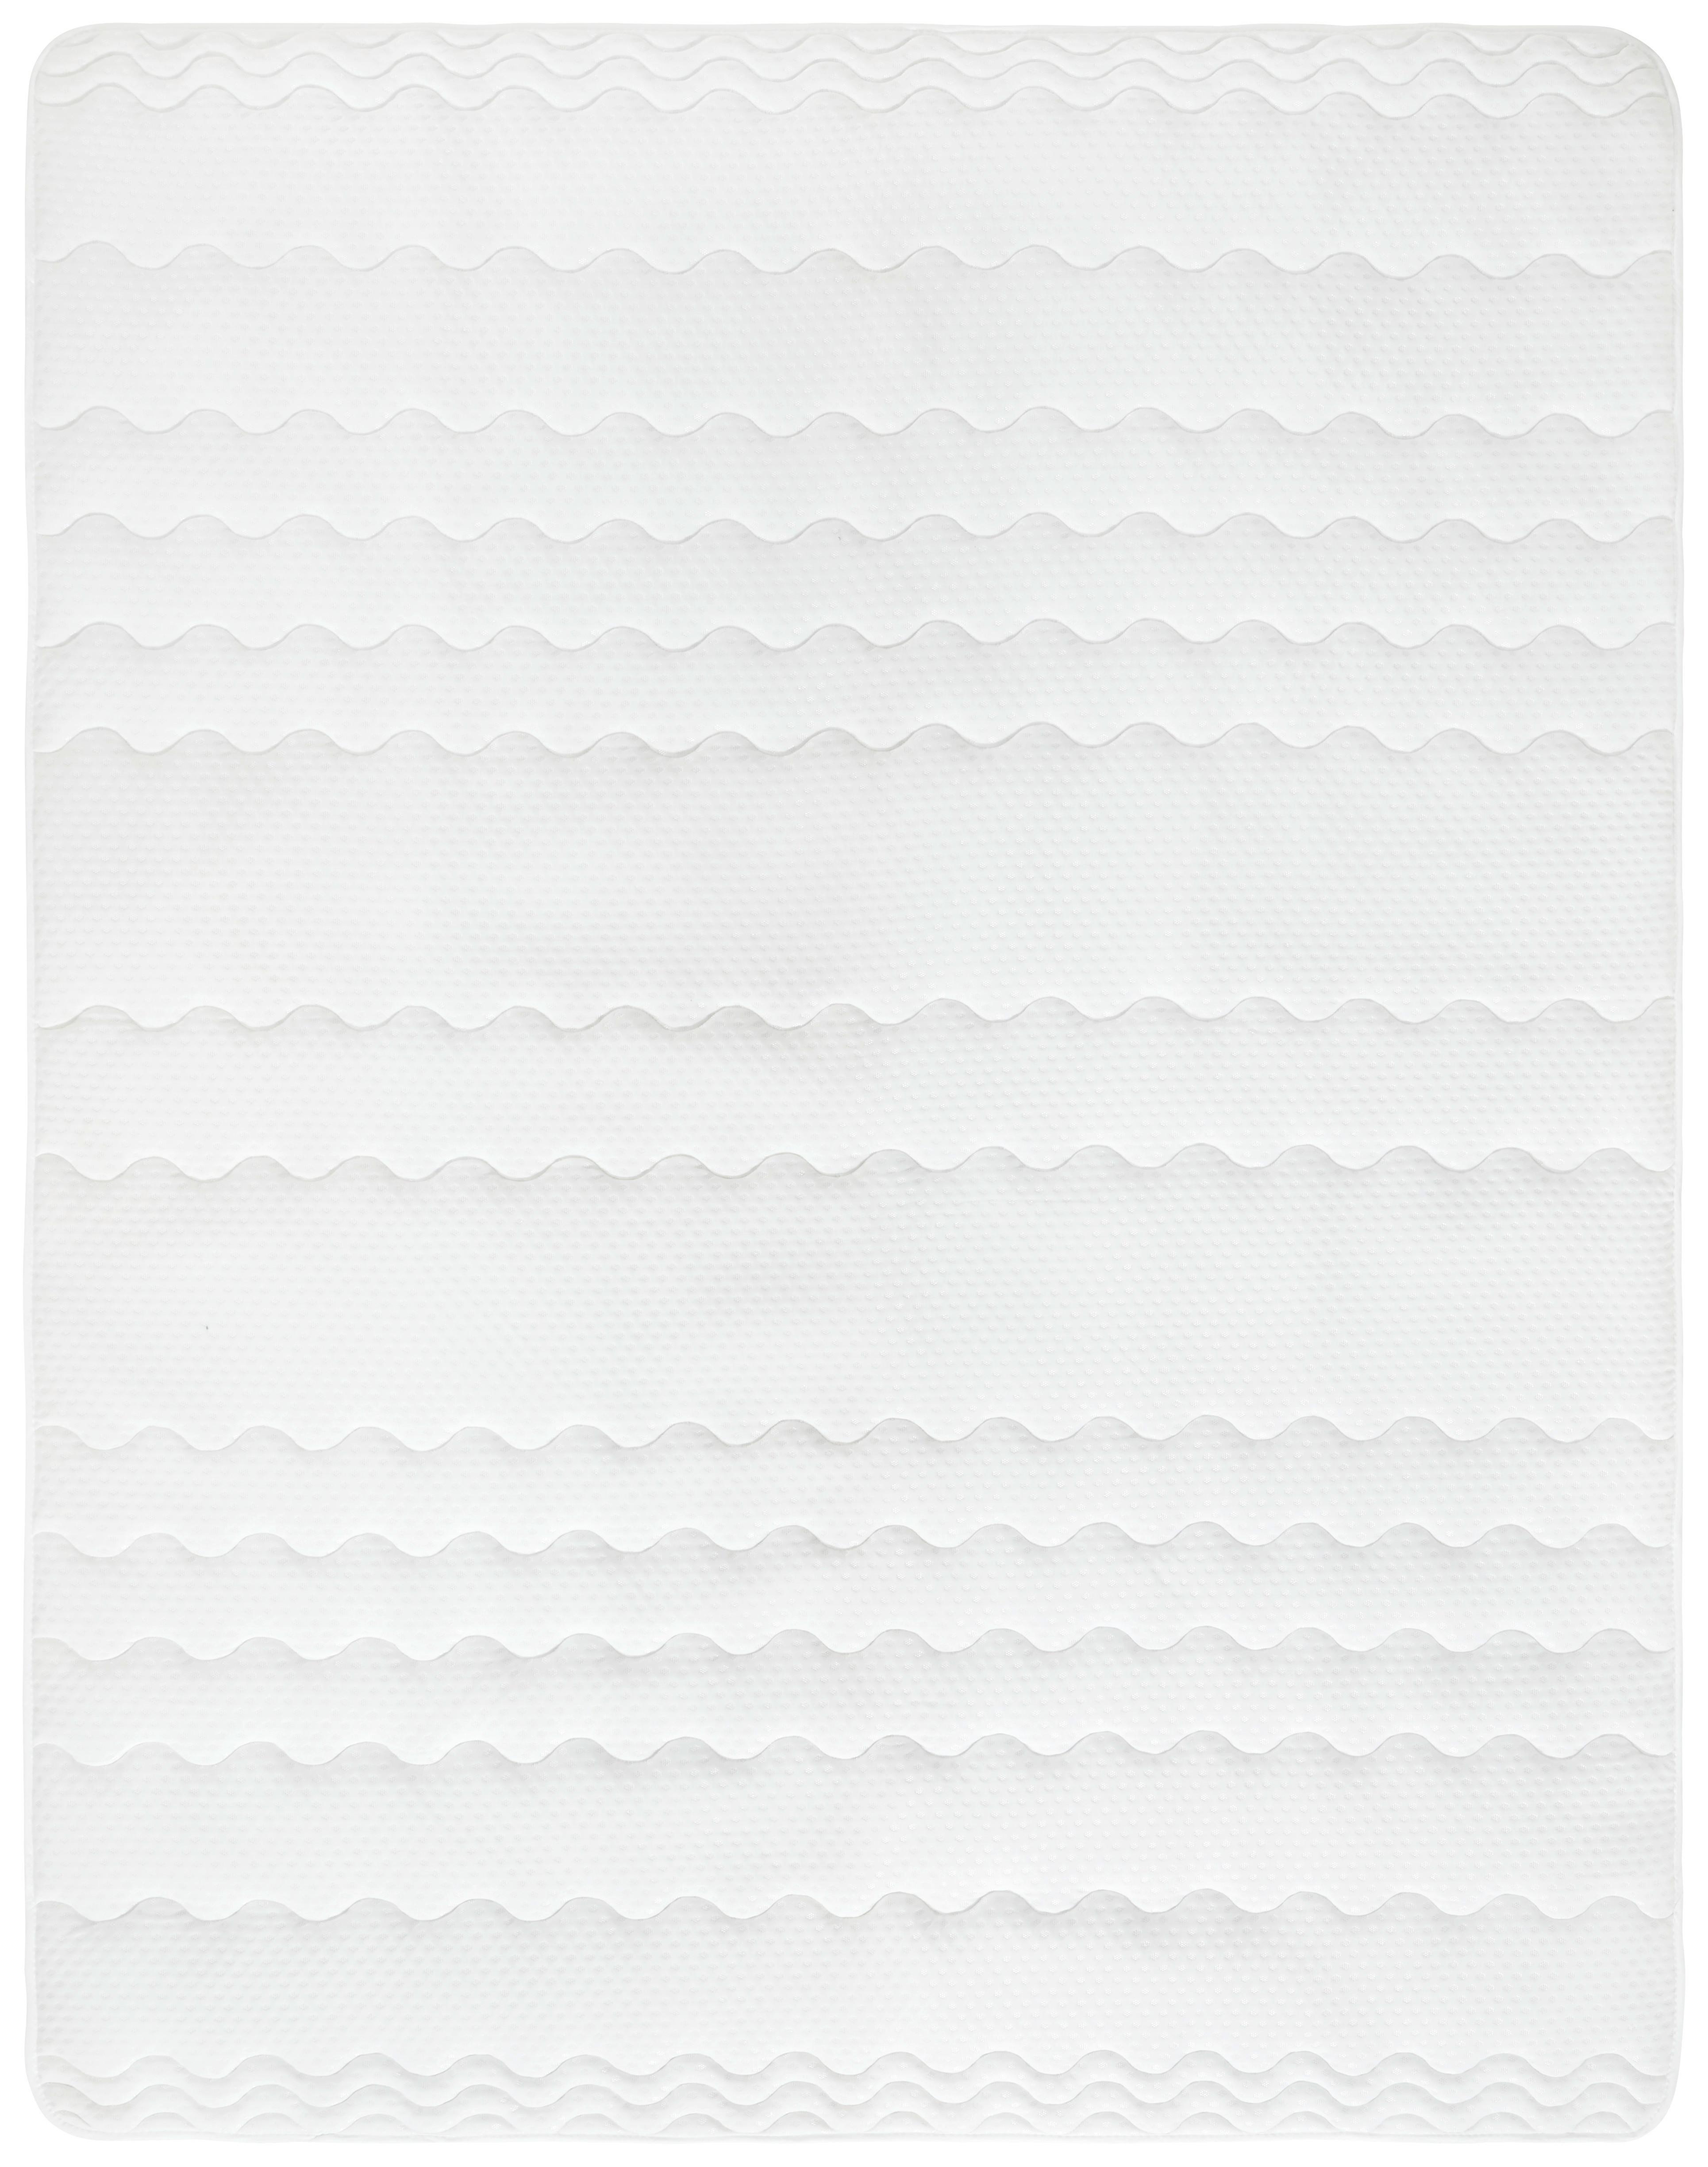 Podložka Na Matrac Visco, 160/200cm, Biela - biela, textil (160/200cm) - Nadana